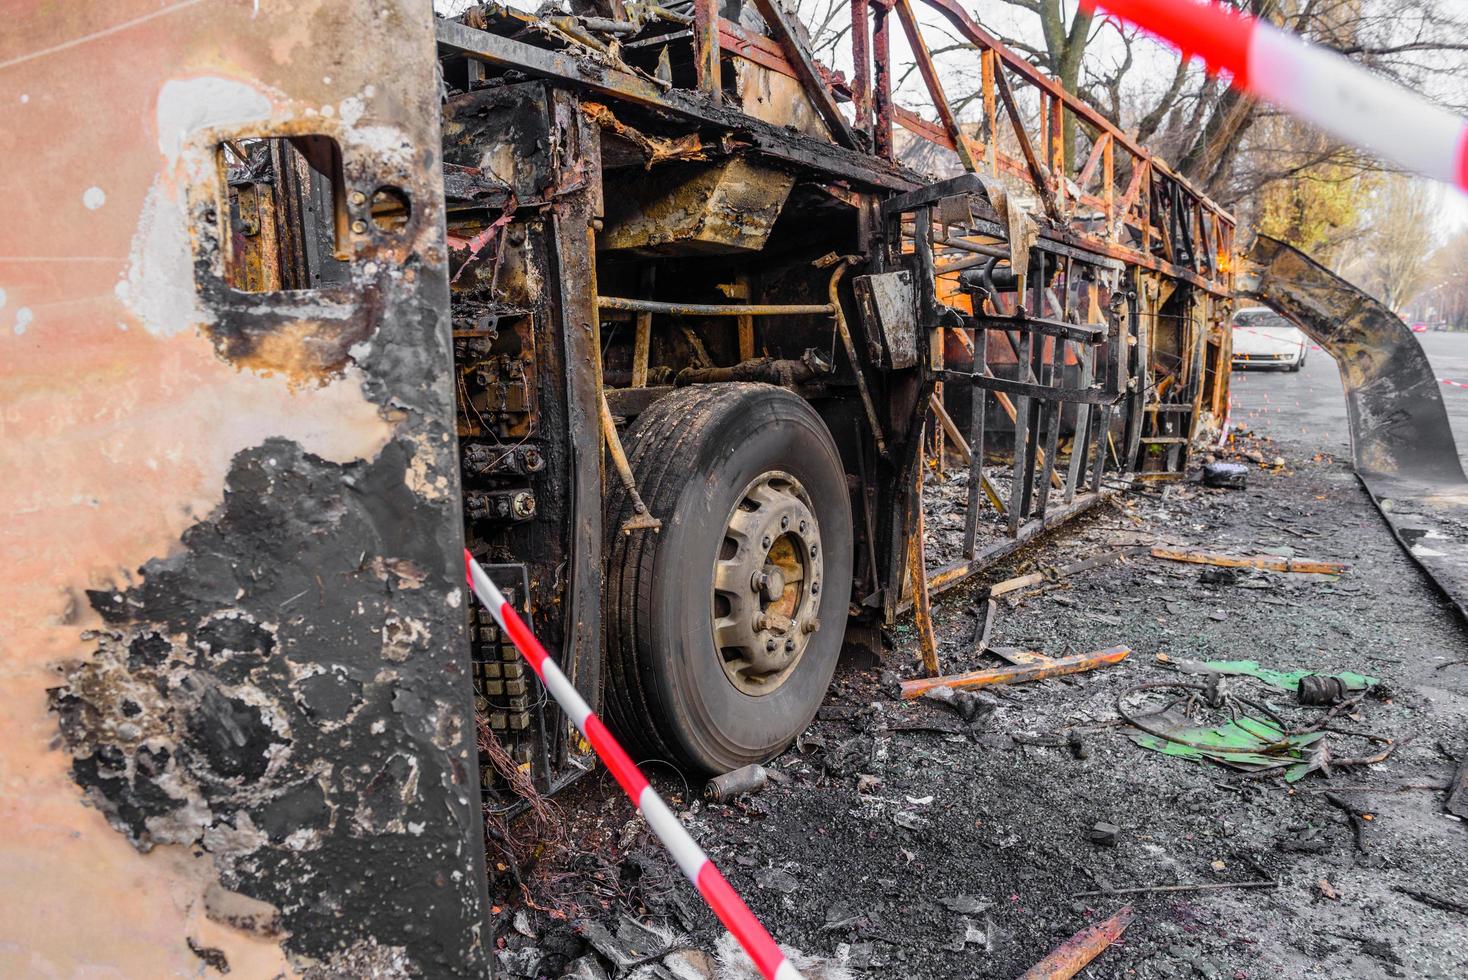 bränd buss syns på gatan efter att ha tagits i brand under resor, efter brand foto